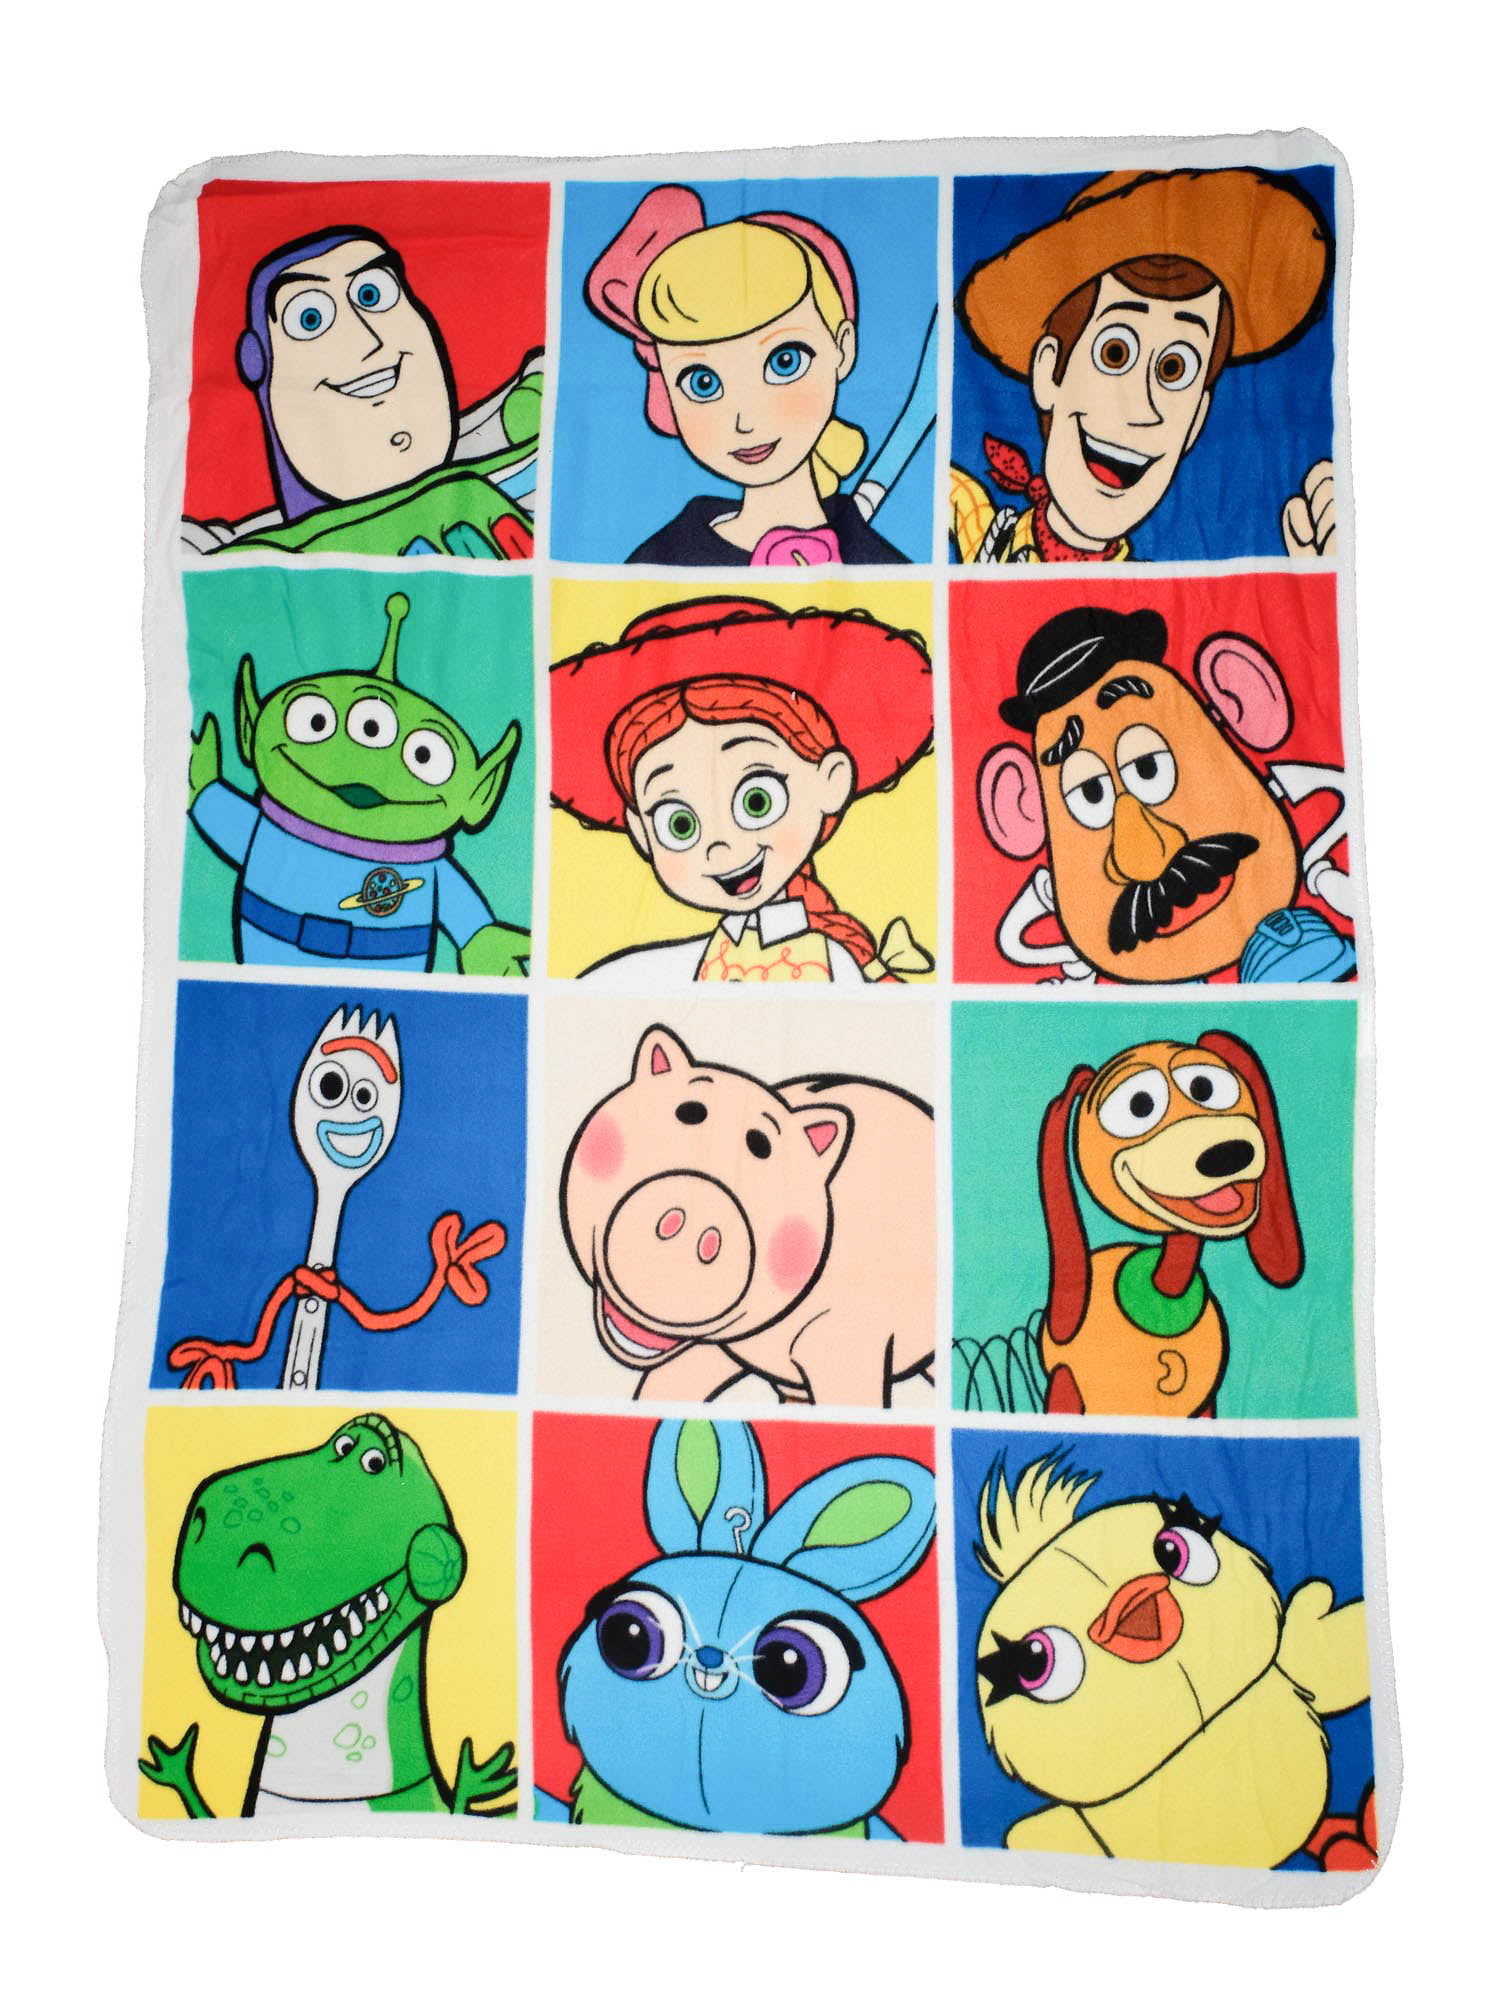 Disney Toy Story 4 Fleece Blanket 45 X 60 Family Portrait Throw Walmartcom Walmartcom